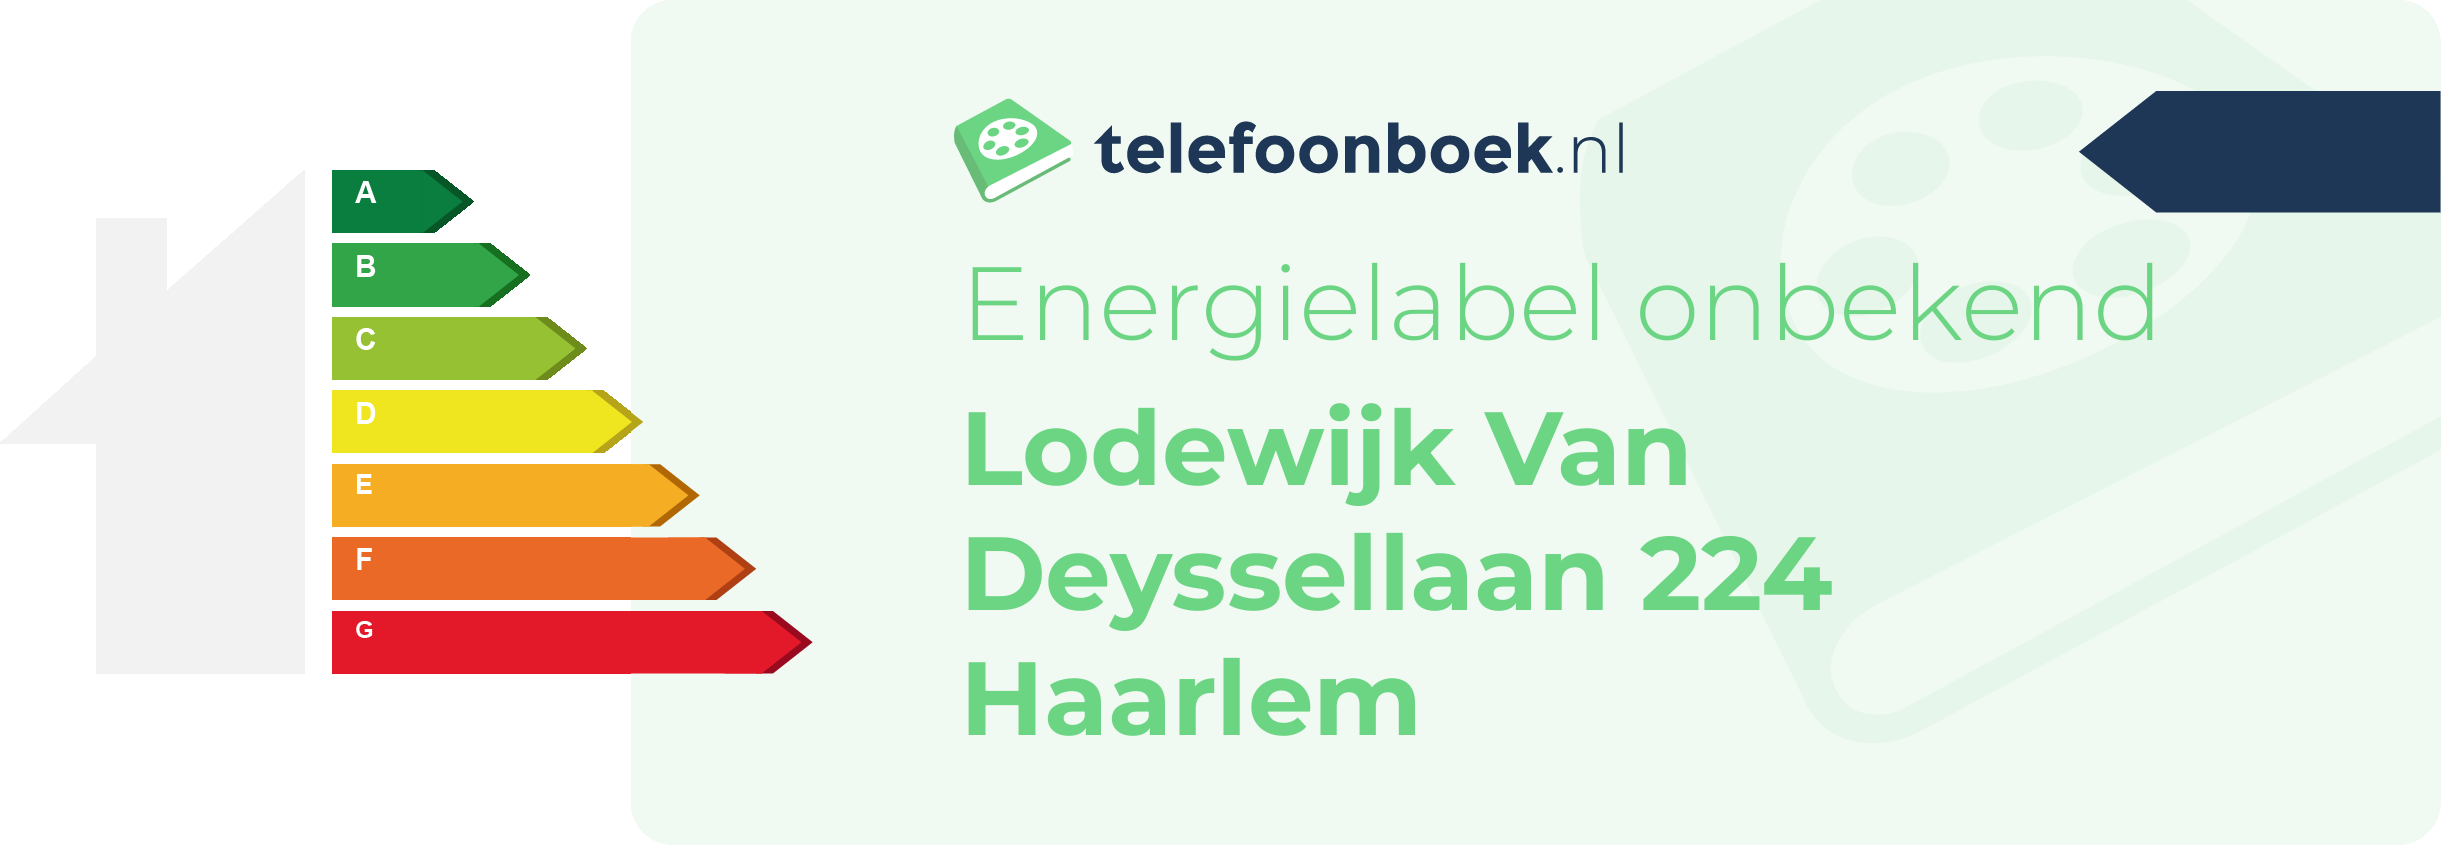 Energielabel Lodewijk Van Deyssellaan 224 Haarlem